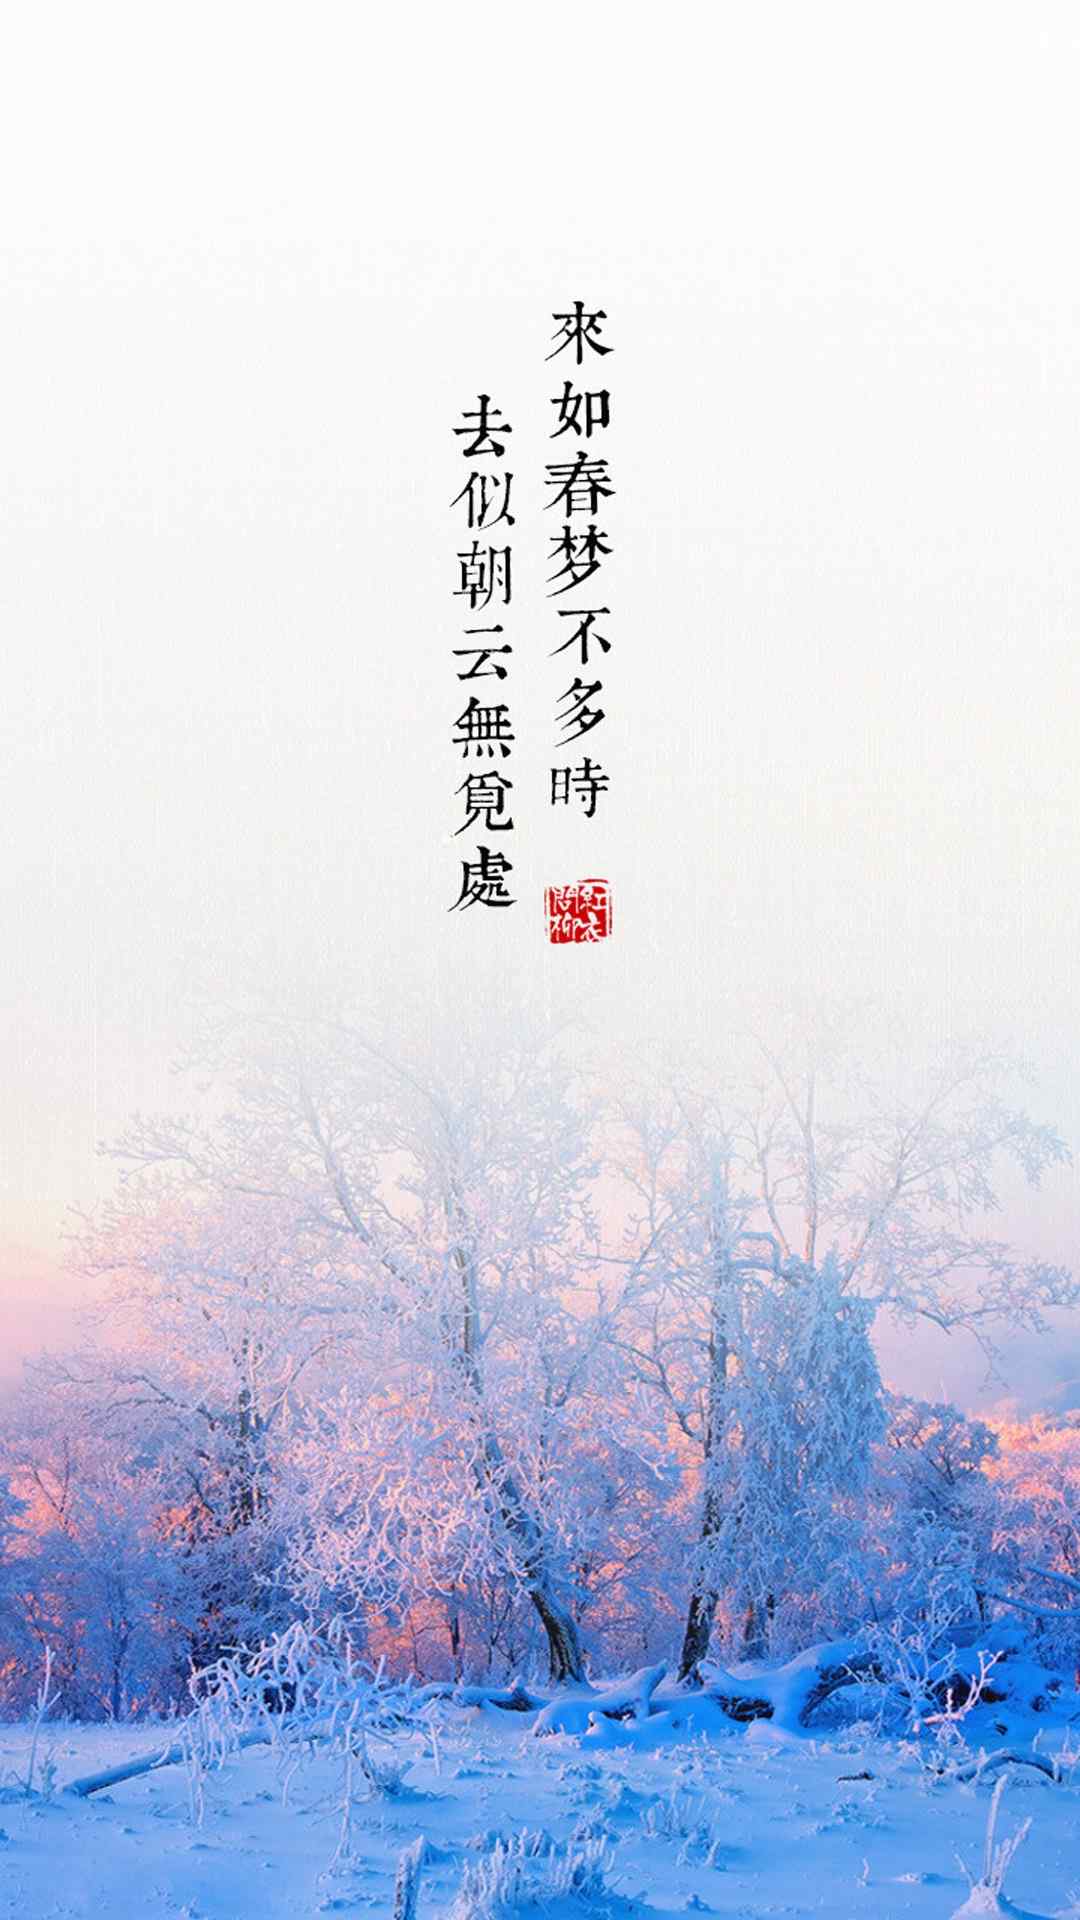 中国风诗词文字iPhone 6 Plus壁纸下载